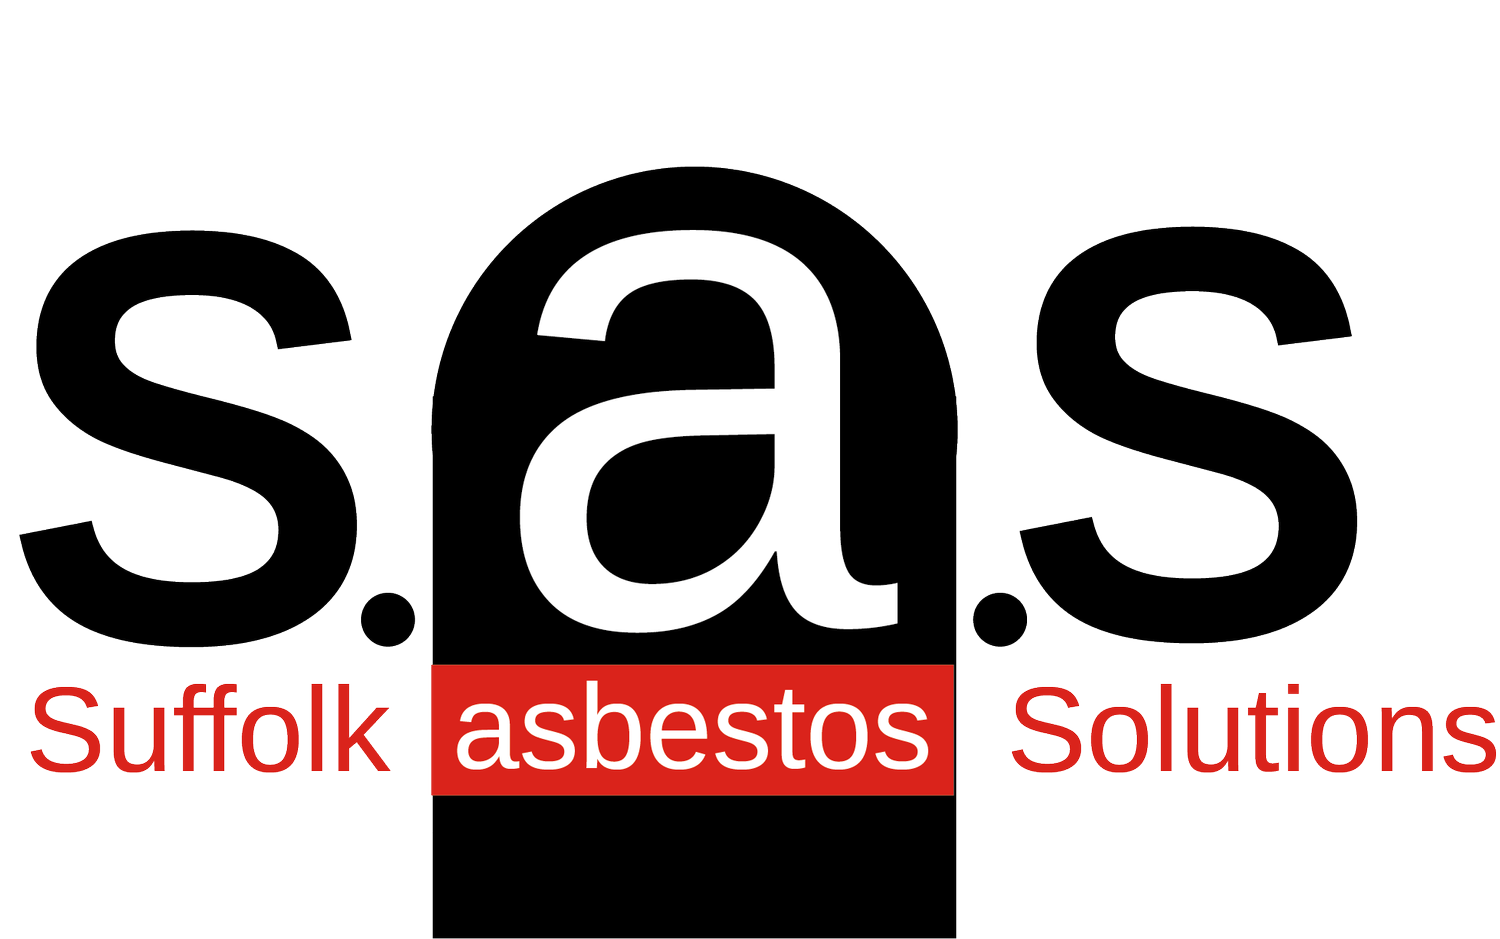 Suffolk Asbestos Solutions Ltd